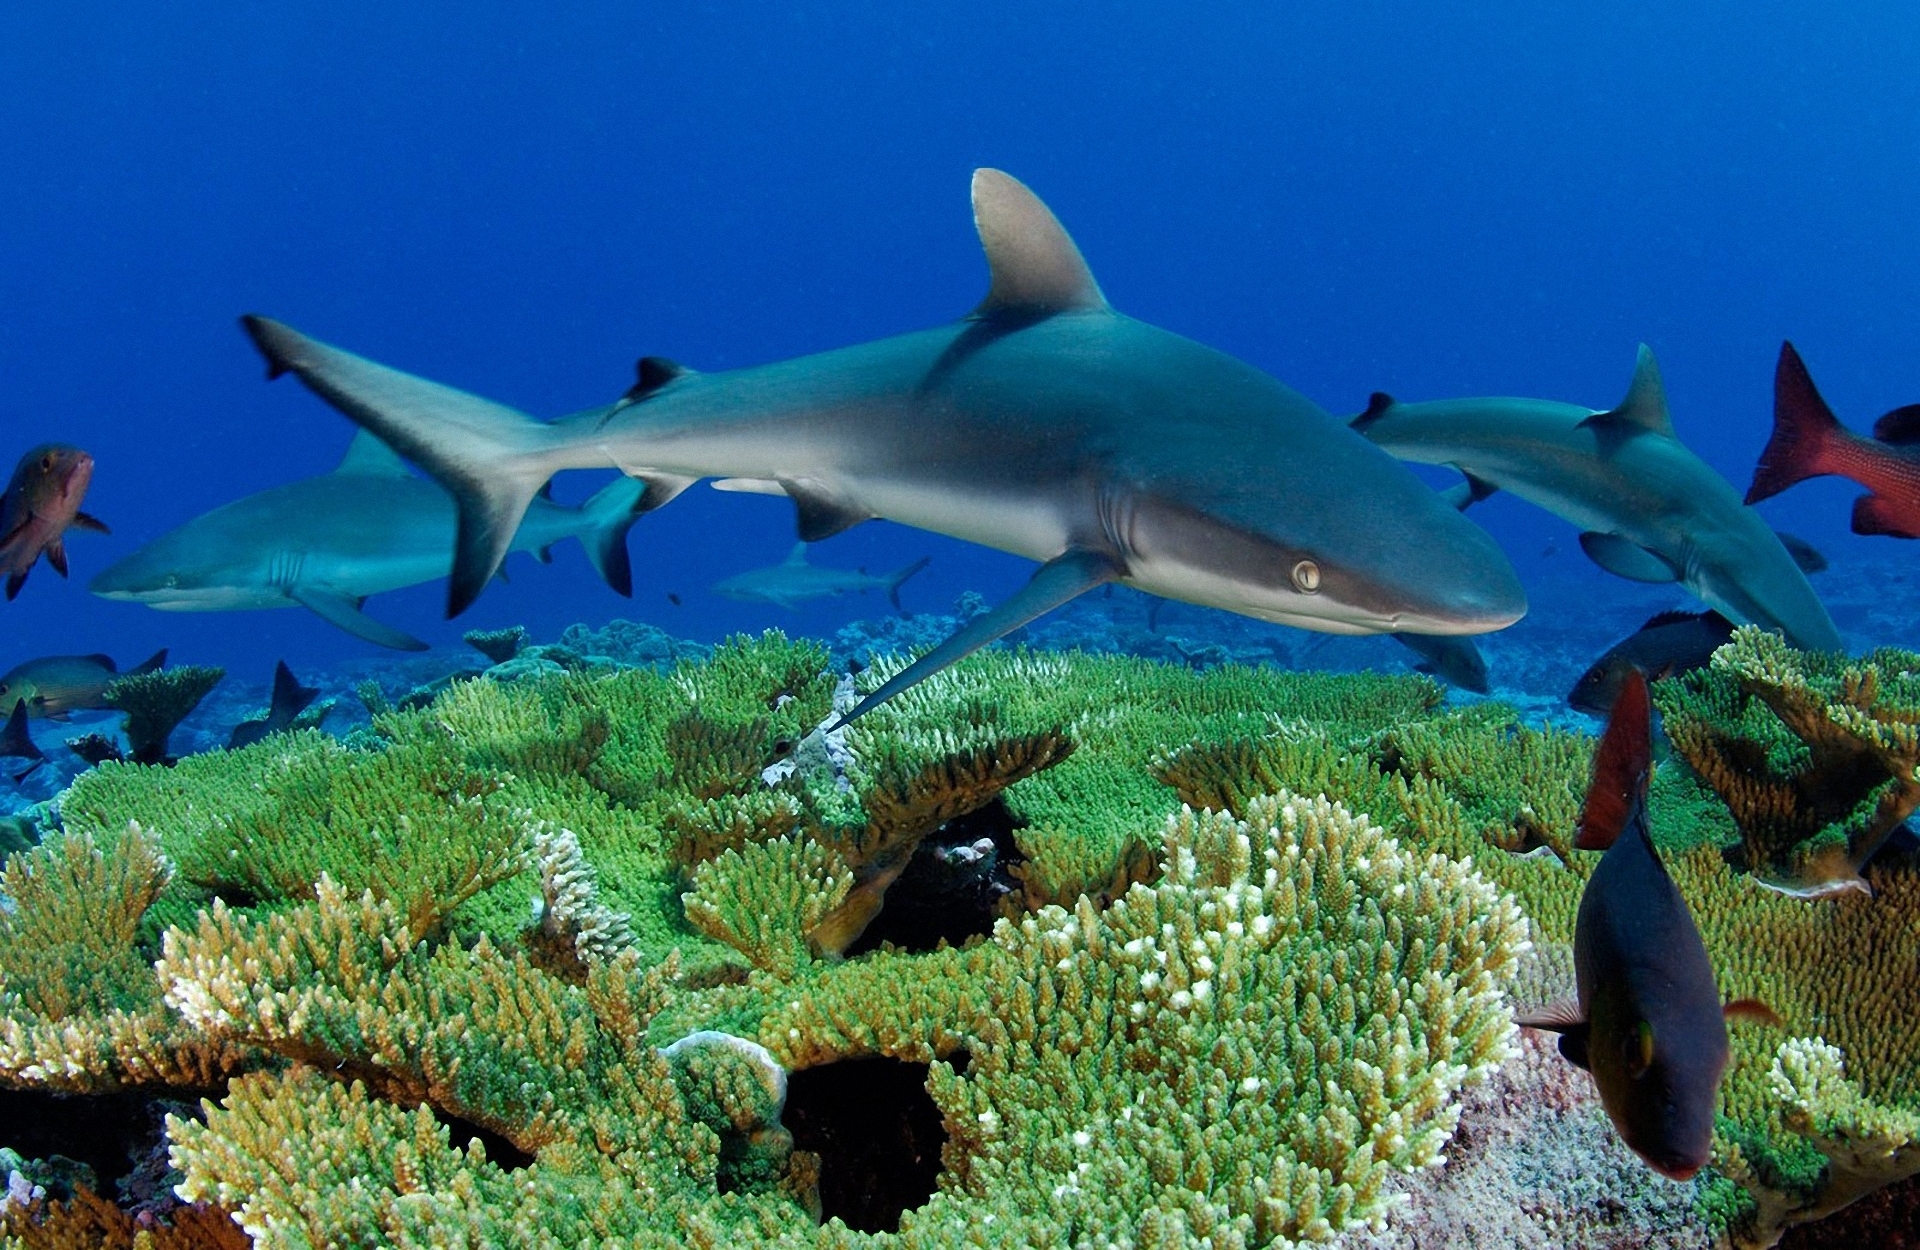 A sleek shark swimming gracefully in the deep ocean waters.